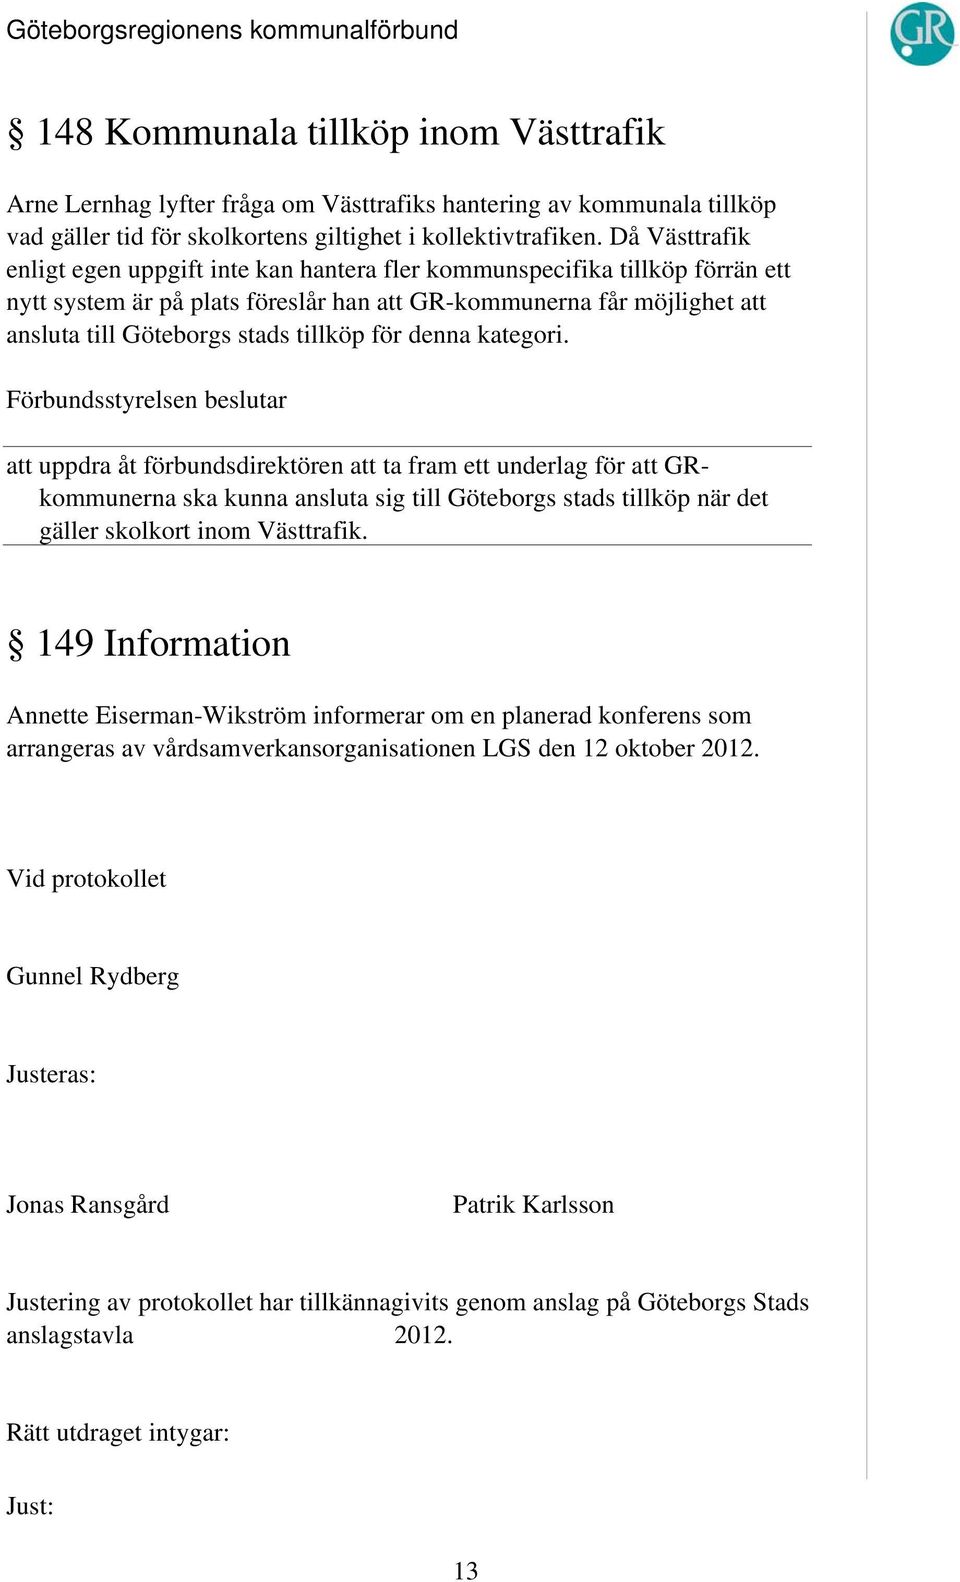 tillköp för denna kategori. att uppdra åt förbundsdirektören att ta fram ett underlag för att GRkommunerna ska kunna ansluta sig till Göteborgs stads tillköp när det gäller skolkort inom Västtrafik.